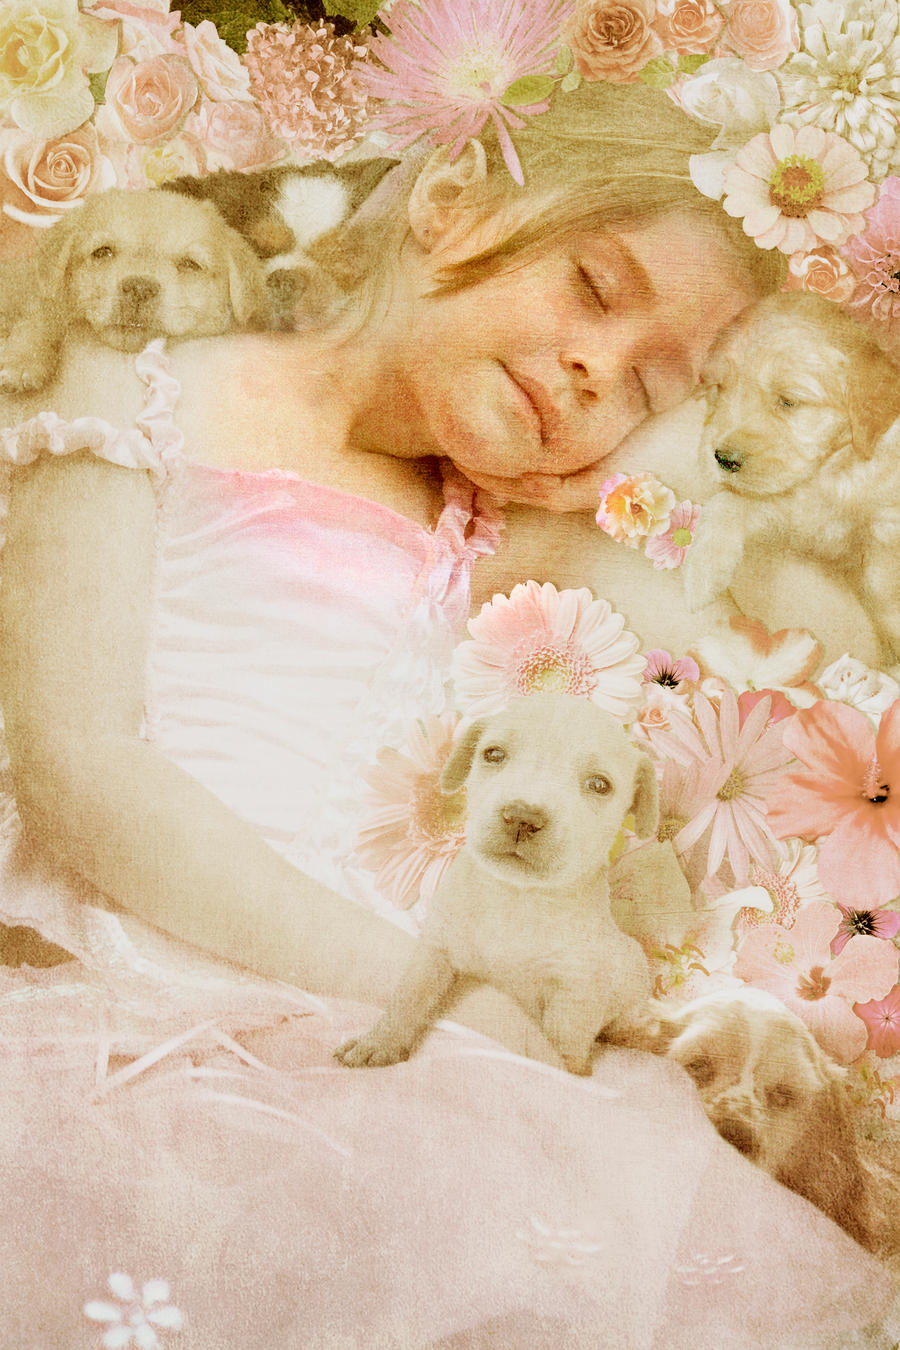 Puppy Dreams